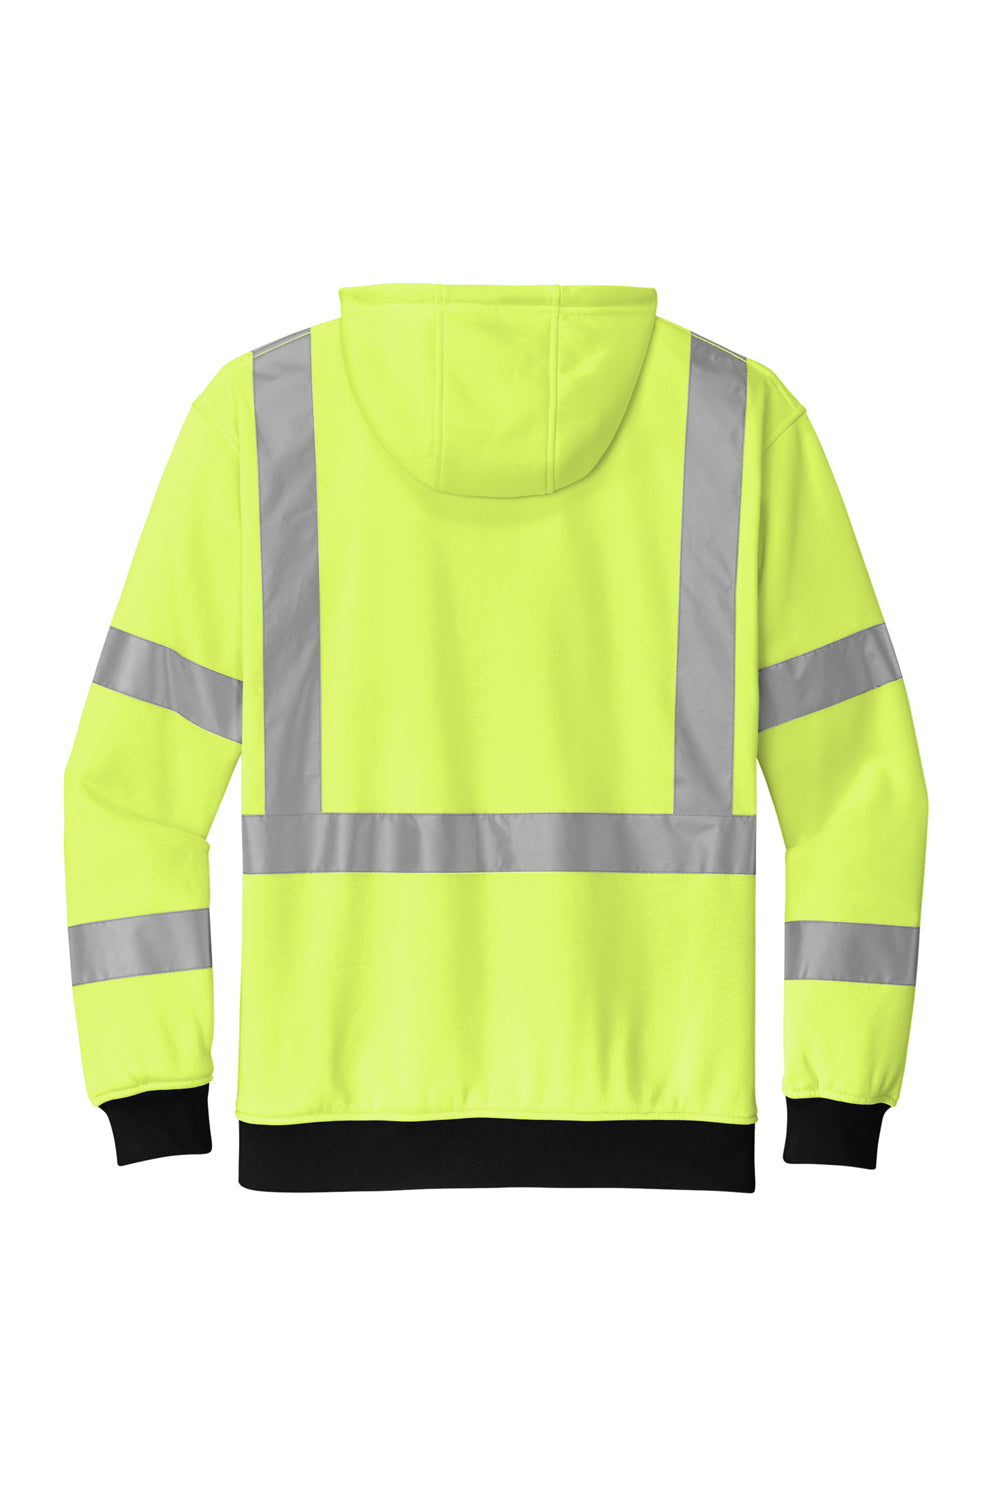 CornerStone CSF300 Enhanced Visibility Fleece Full Zip Hooded Sweatshirt Hoodie Safety Yellow Flat Back